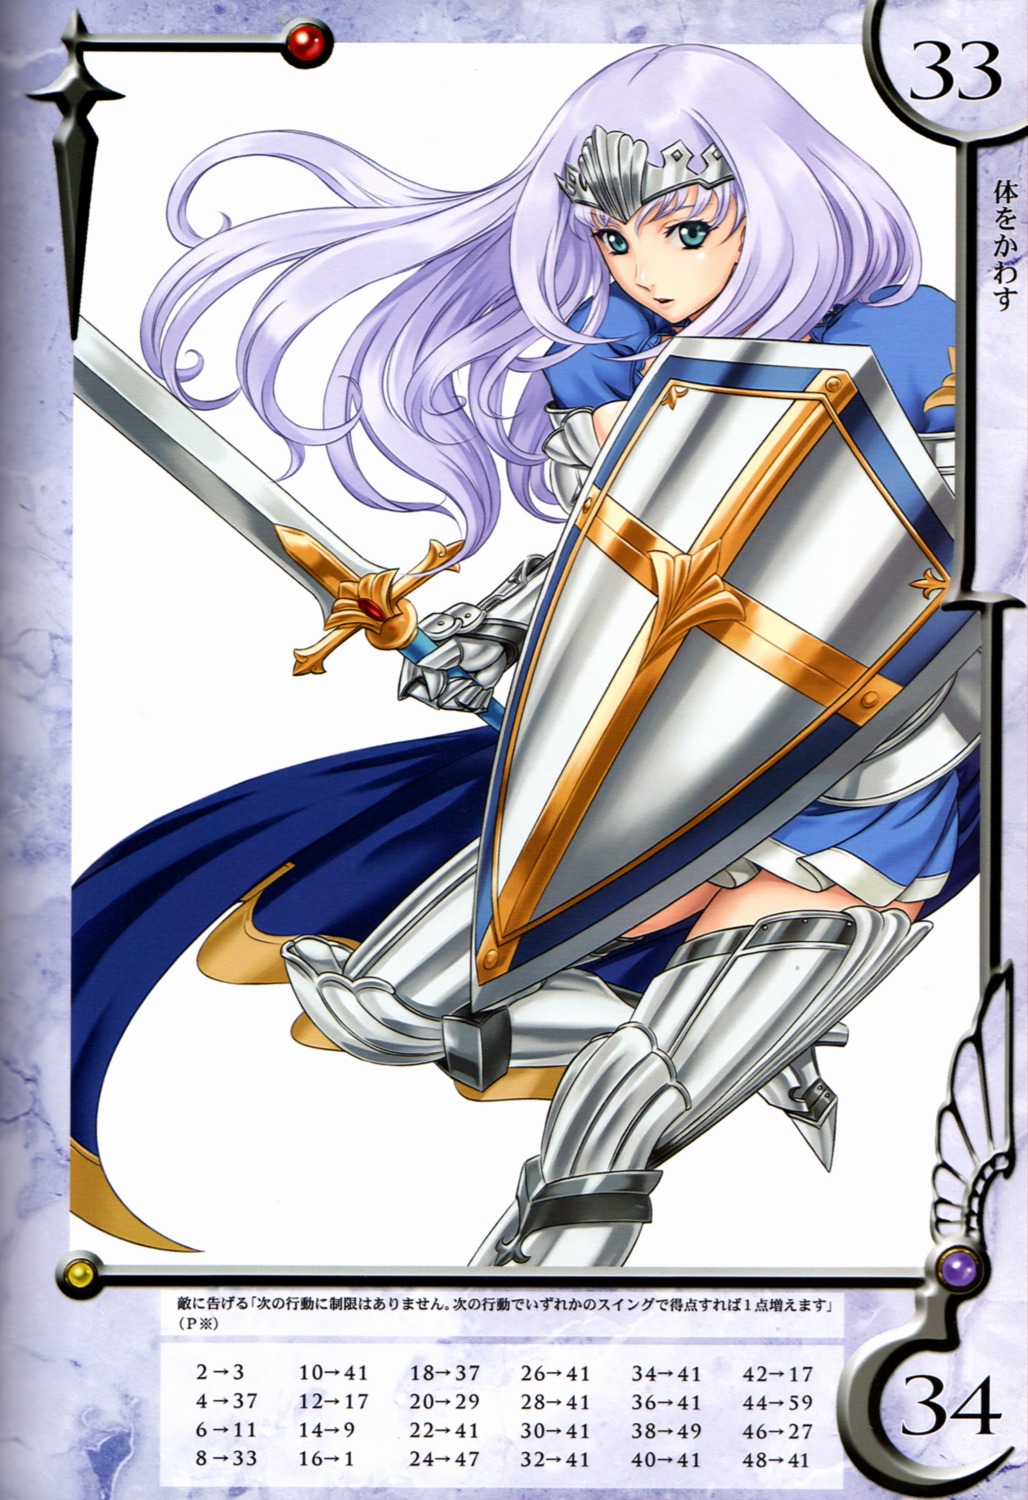 annelotte armor eiwa queen's_blade queen's_blade_rebellion thighhighs